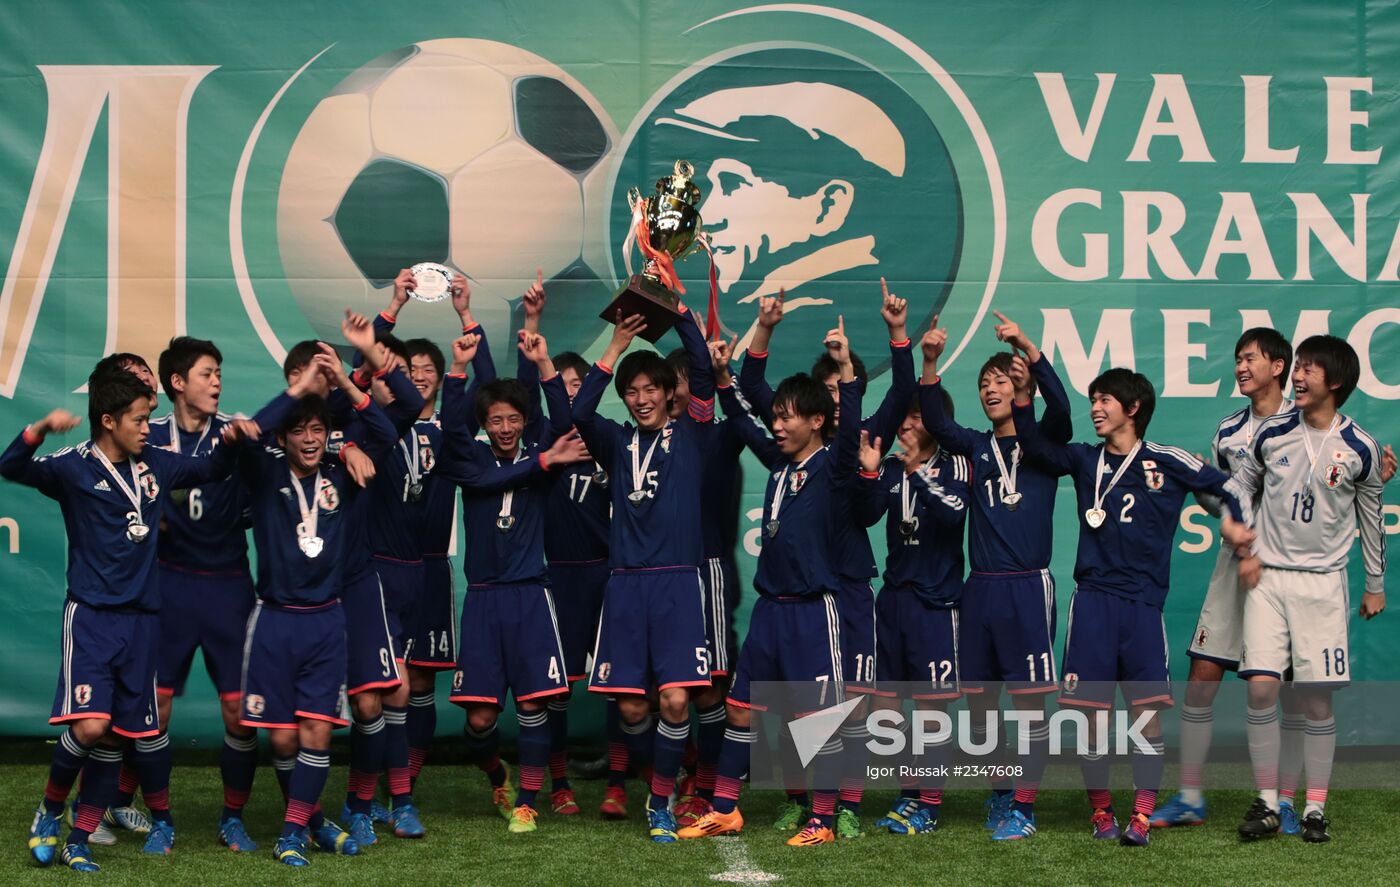 U18 Granatkin Memorial Cup. Final match